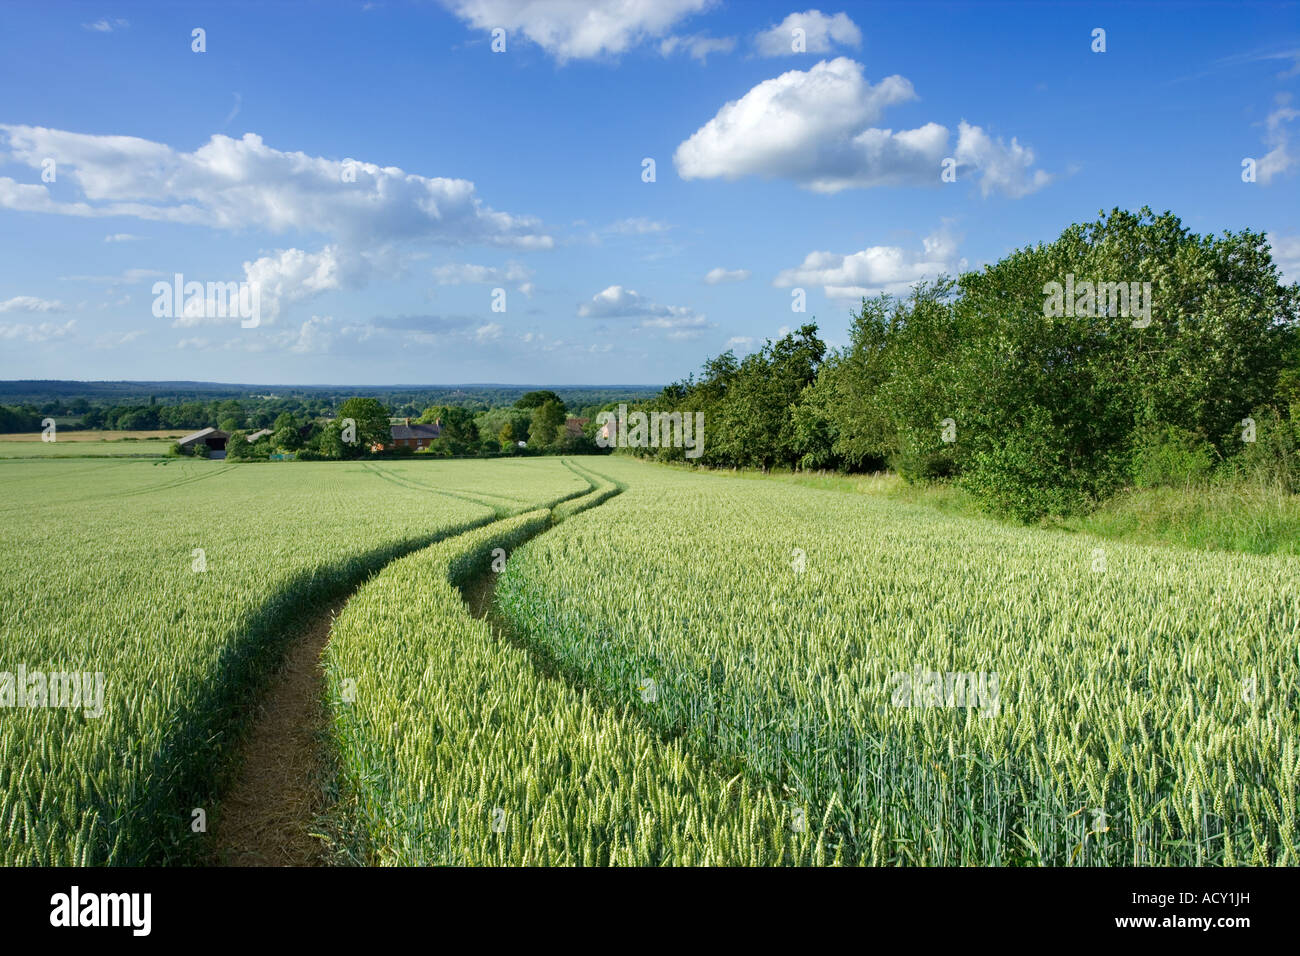 Campo di grano con i cingoli del trattore, Surrey, Regno Unito Foto Stock